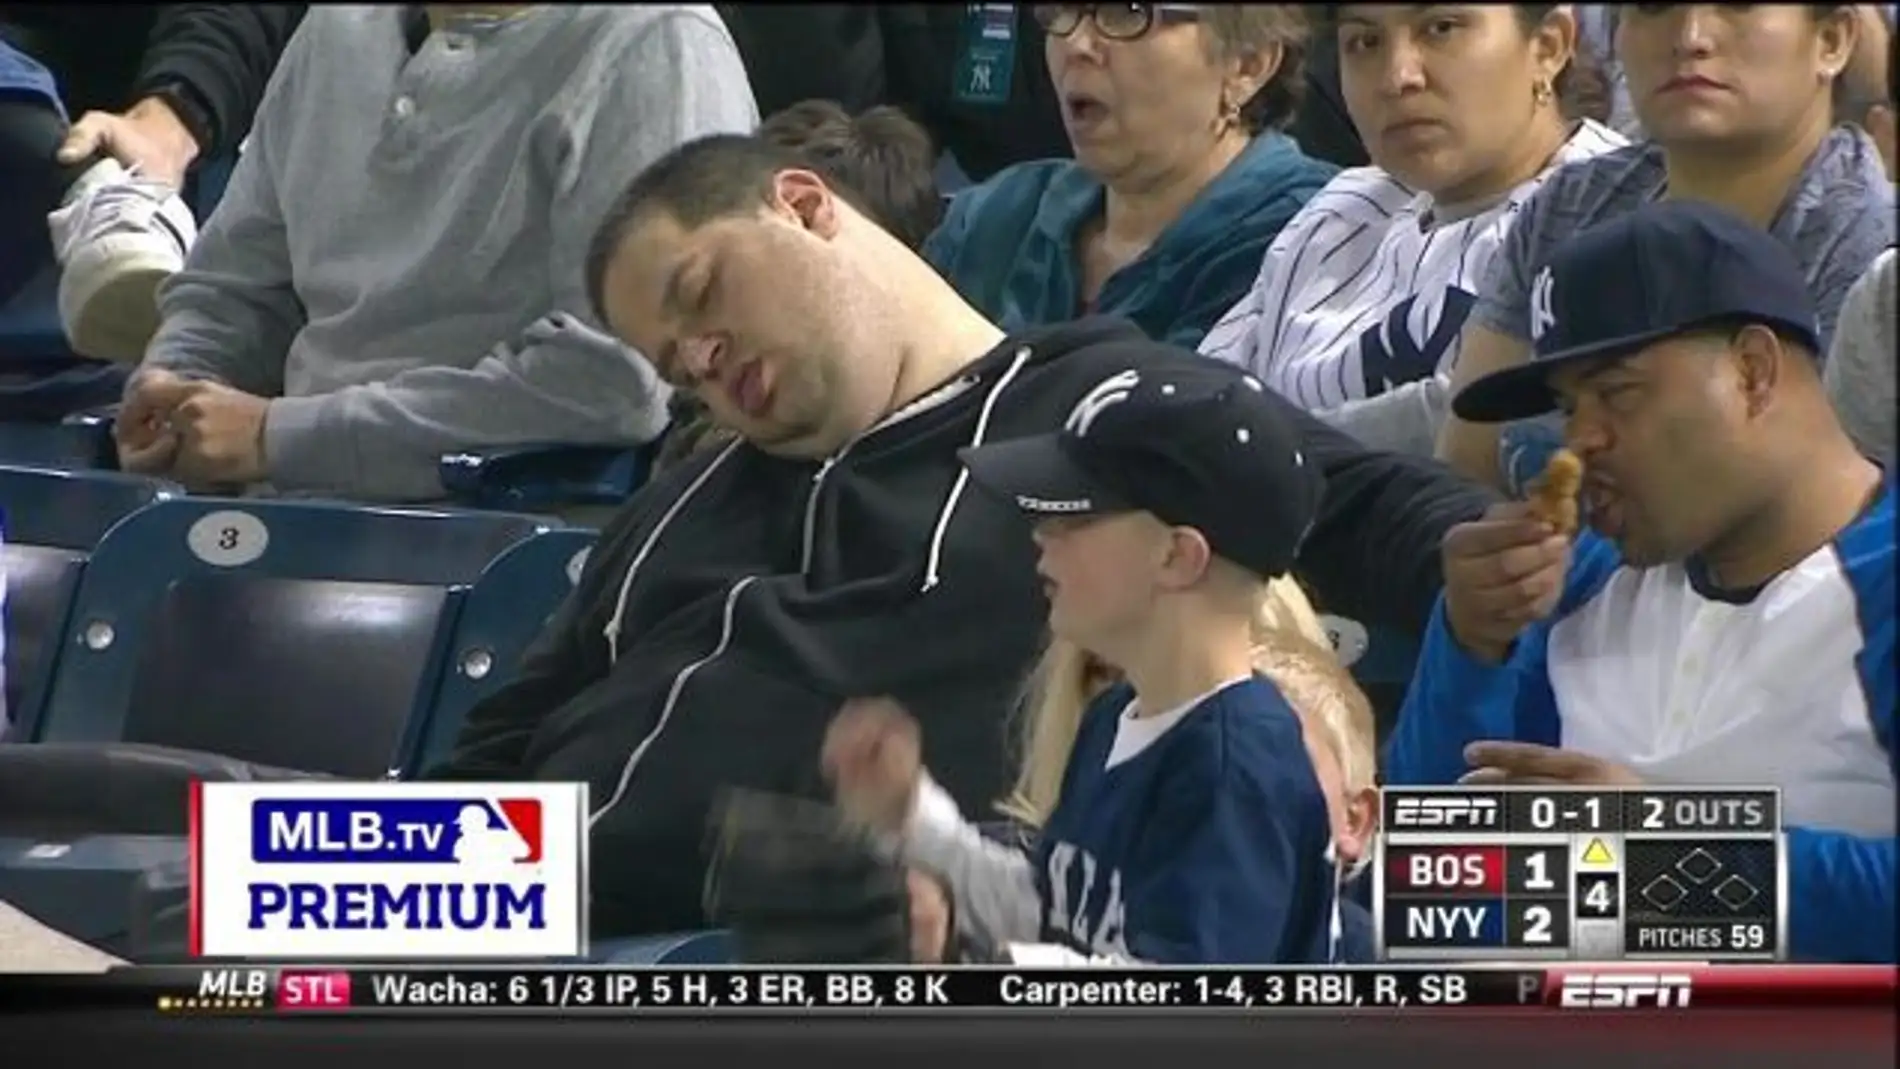 Un jóven pide 10 millones de dólares por la "humillación" de salir dormido en televisión durante un partido de béisbol